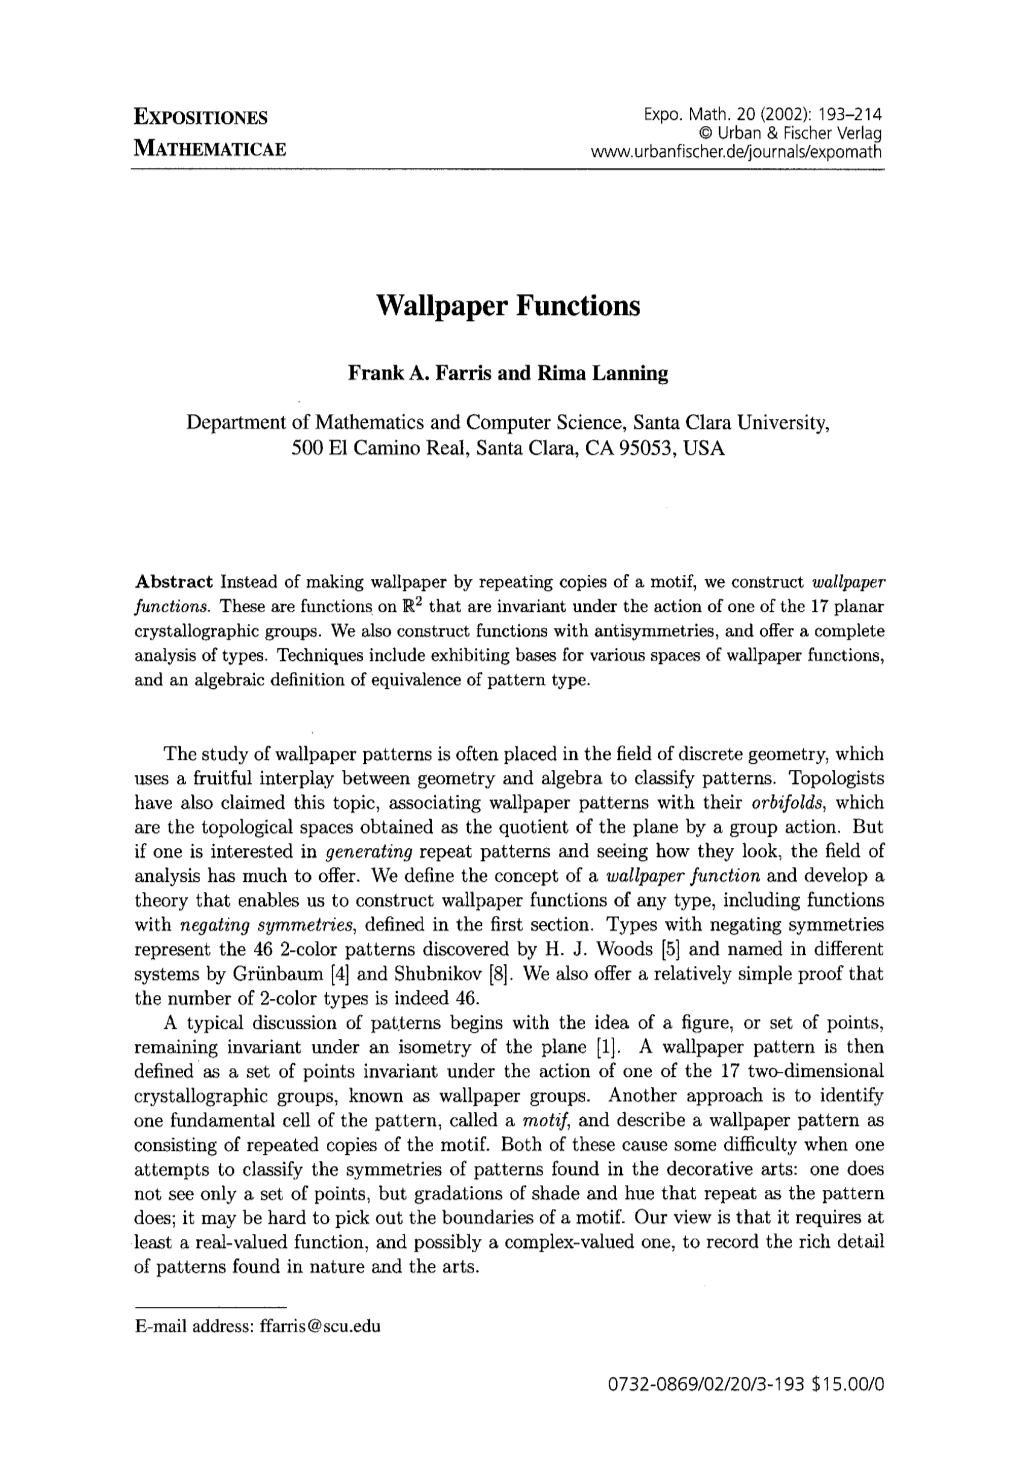 Wallpaper Functions